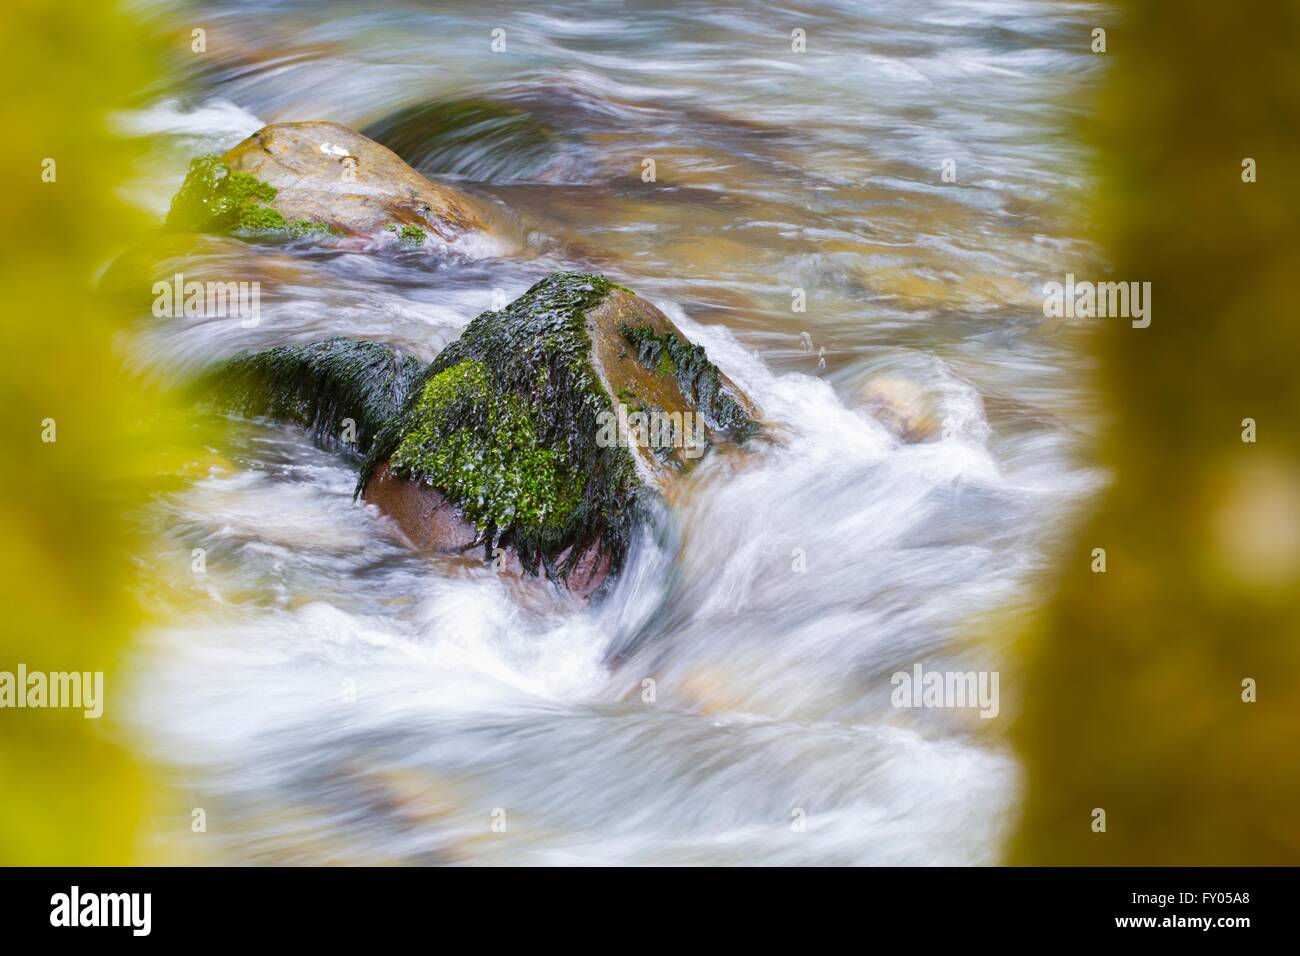 Flowing water and solid rock, Curak river, Zeleni vir in Croatia beautiful Stock Photo